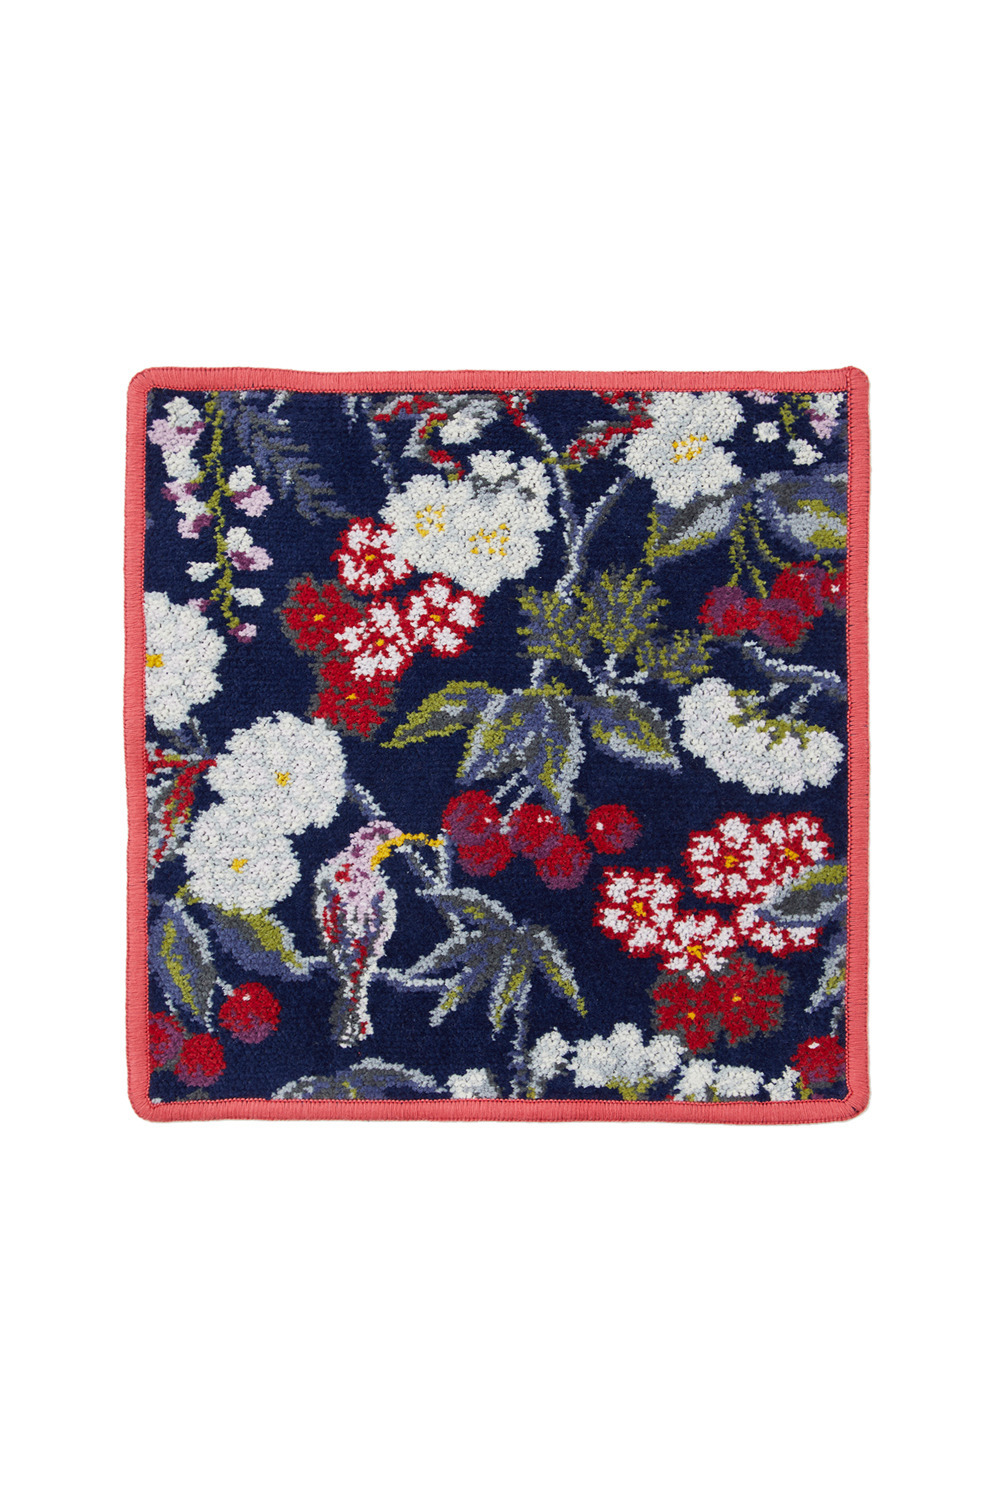 FEILER × KEITAMARUYAMA Botanical Cherry Handkerchief 詳細画像 レッド